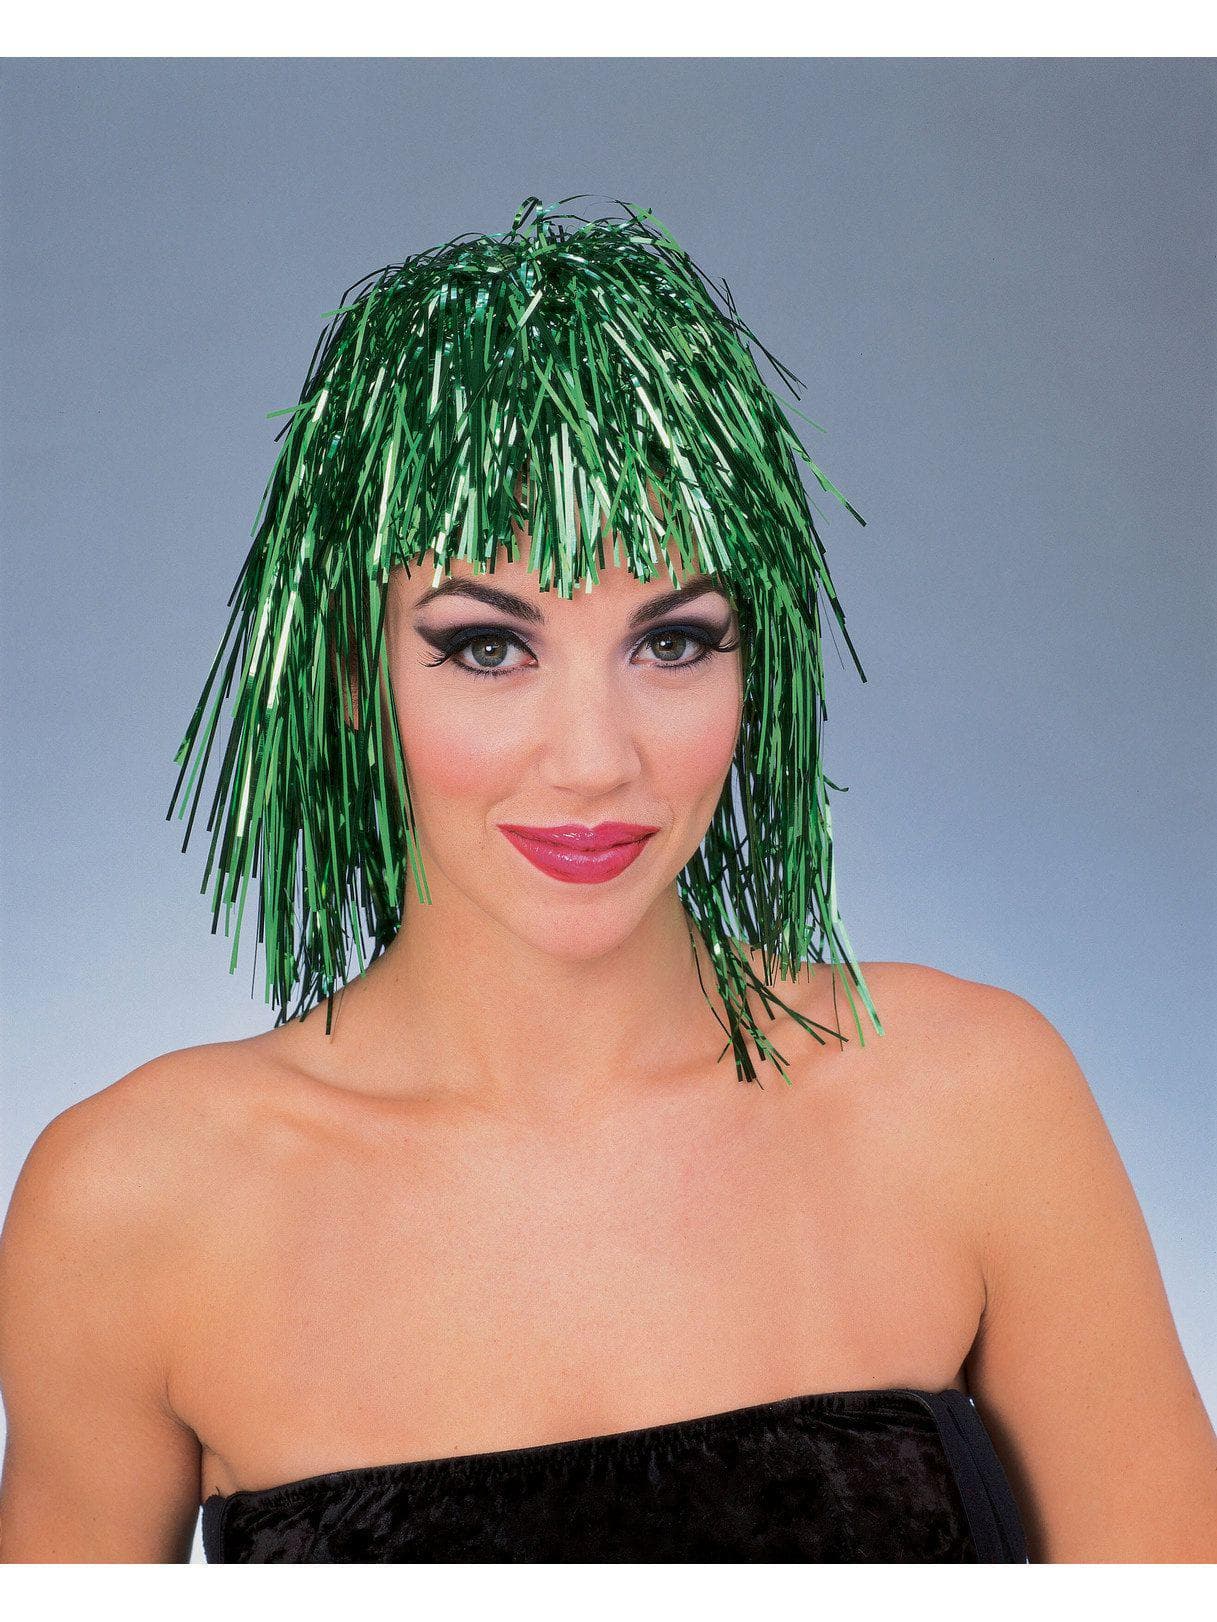 Tinsel Wig - Green - costumes.com